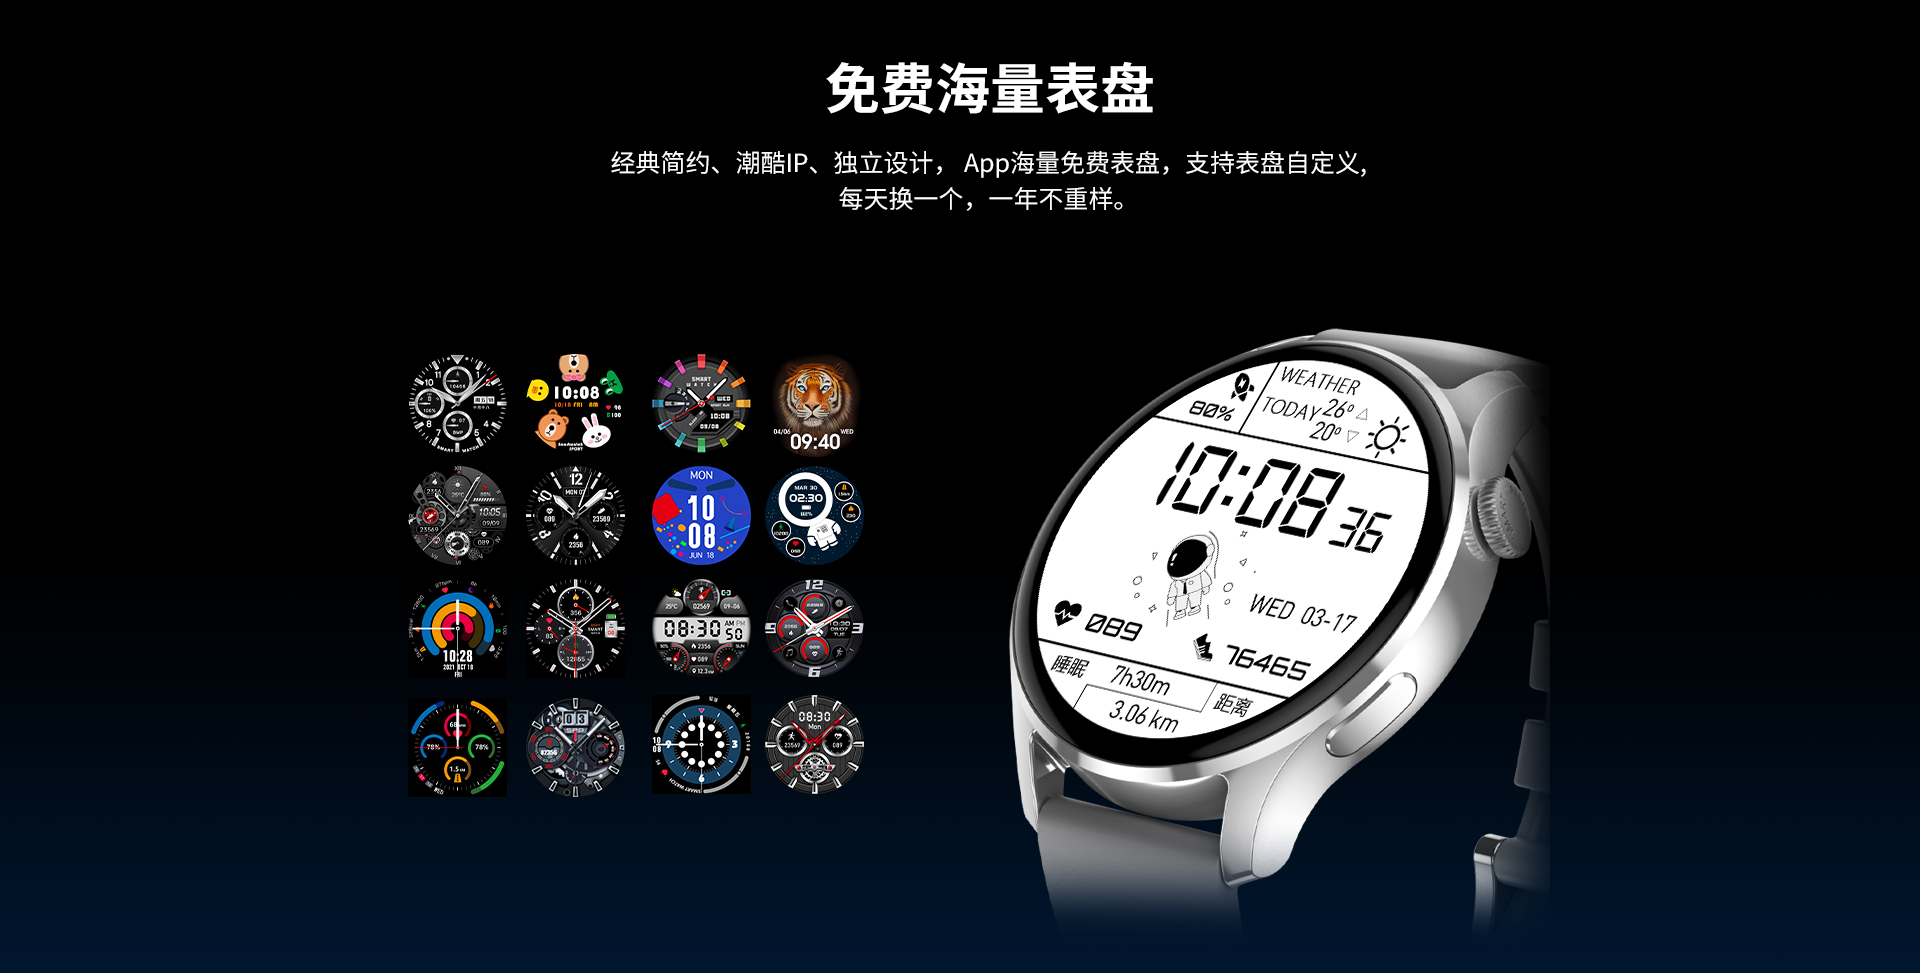 华戴HD3智能手表